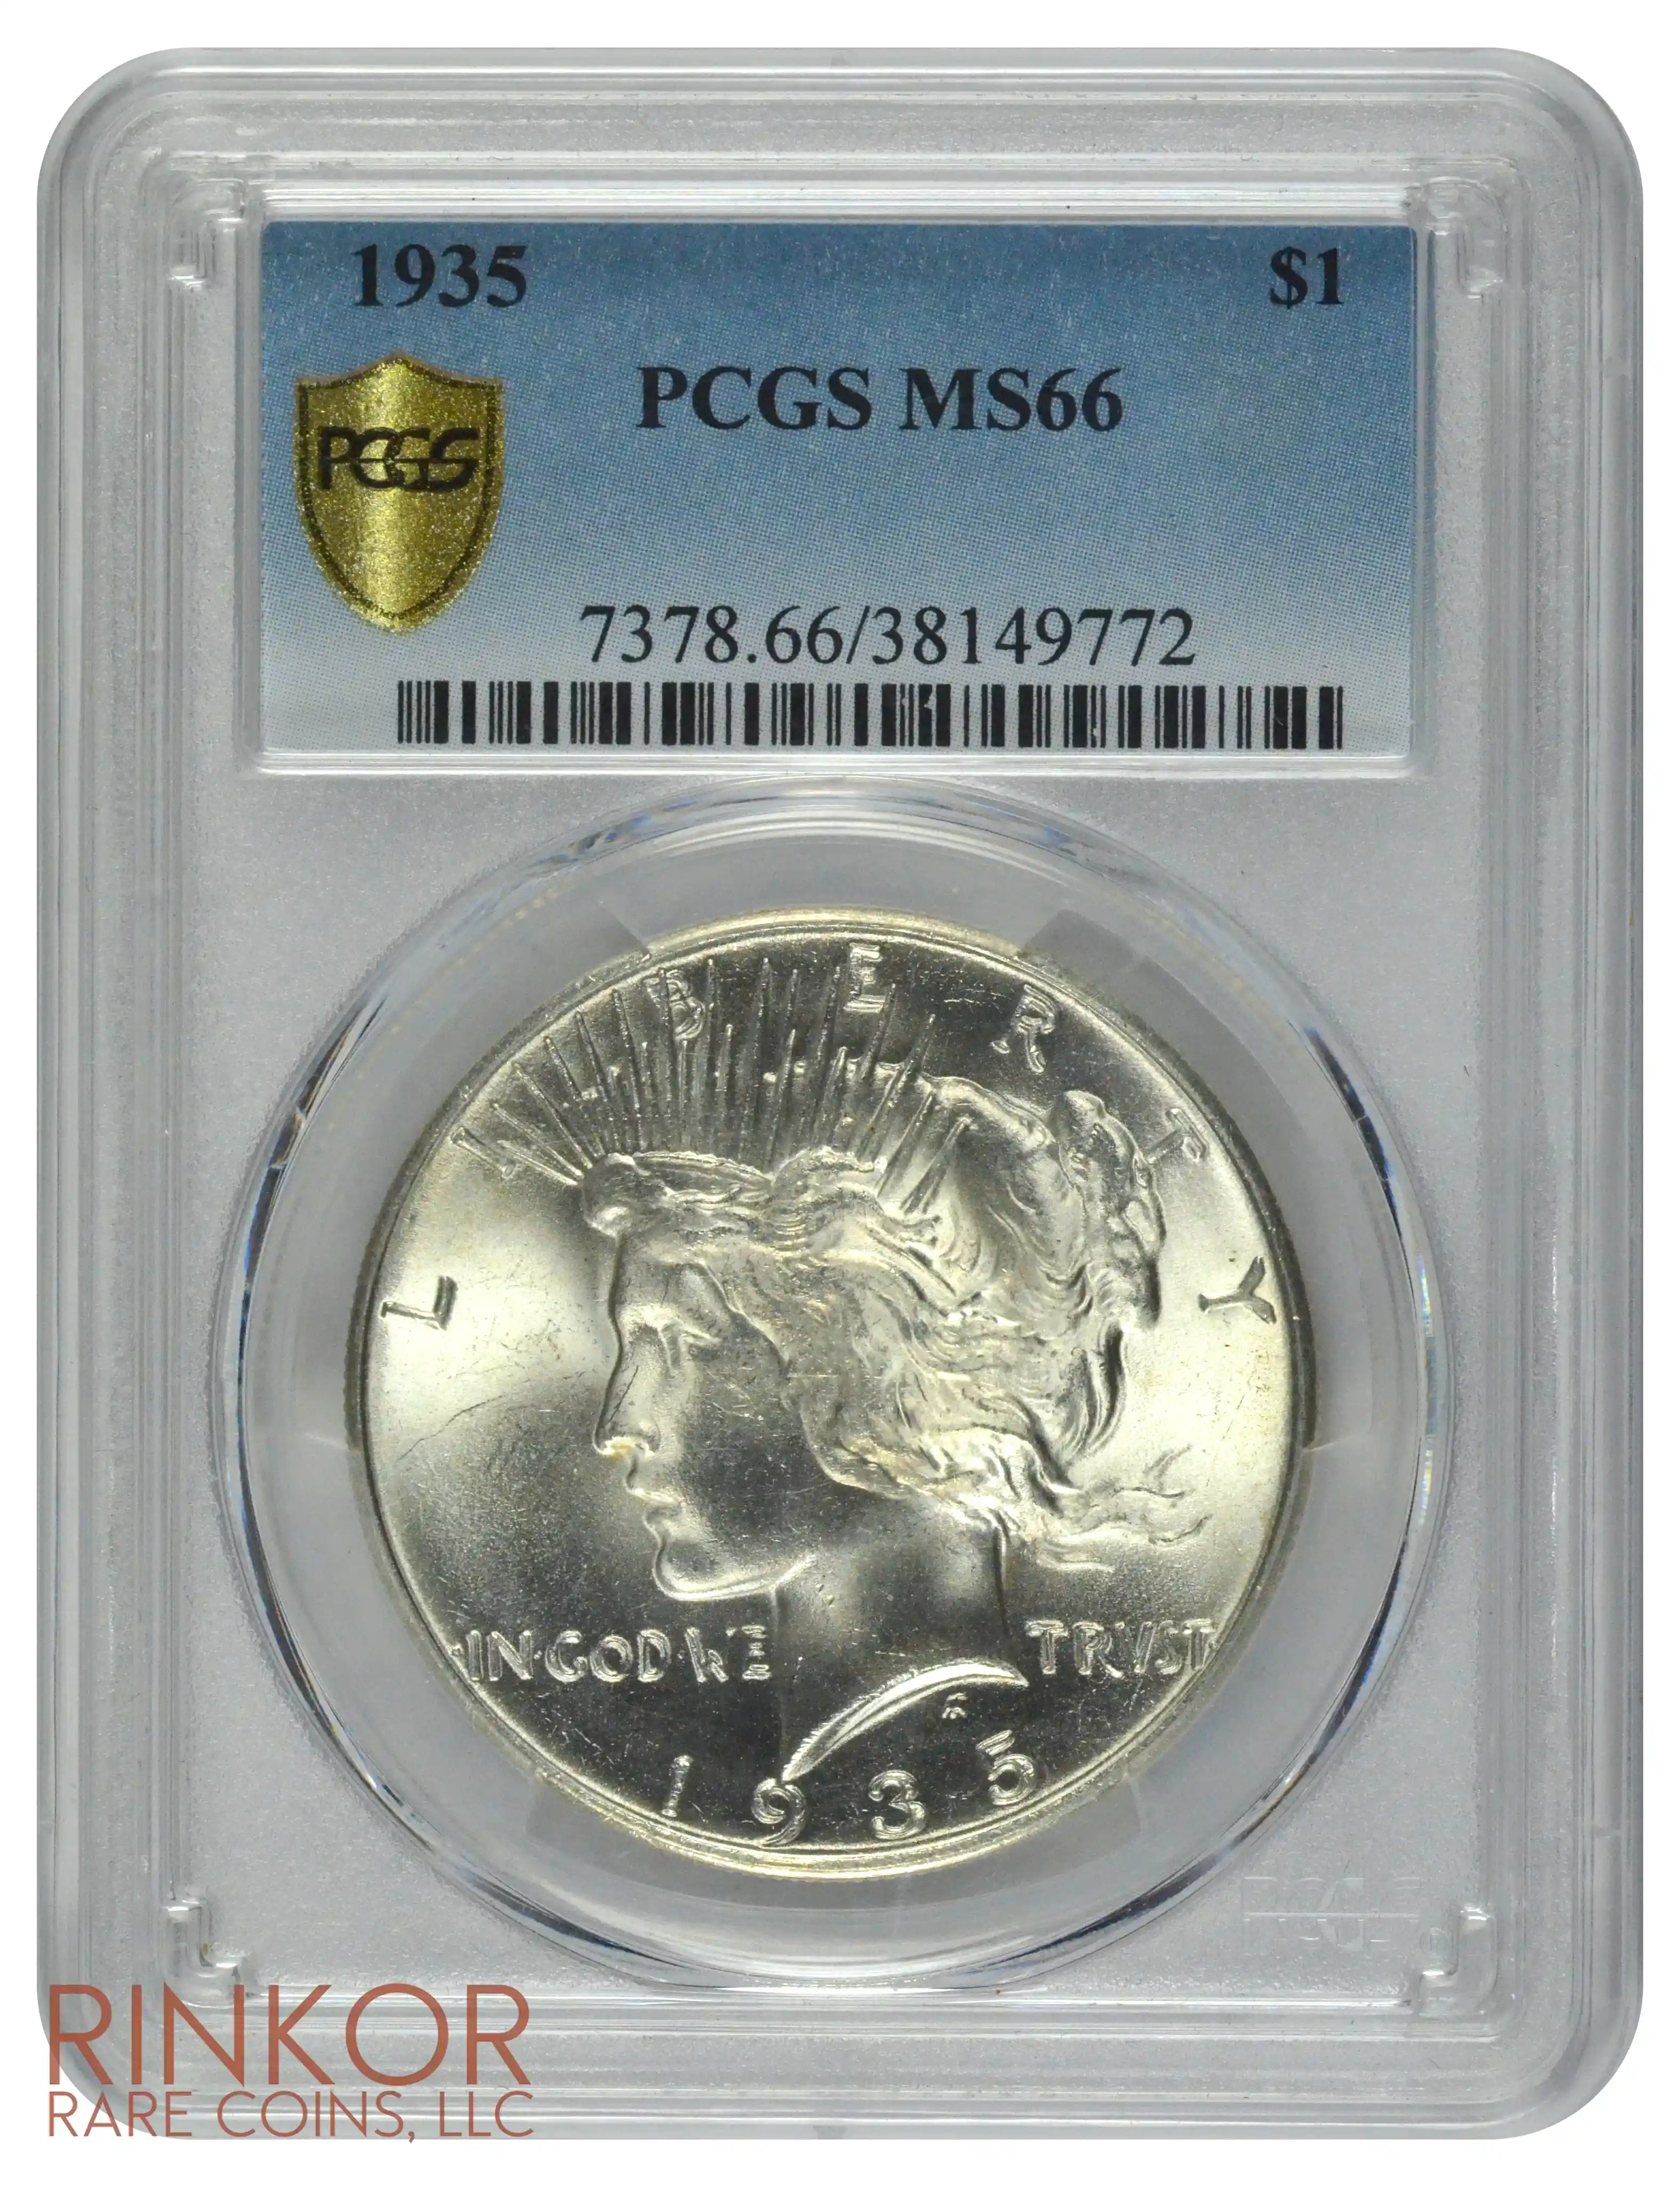 1935 $1 PCGS MS 66